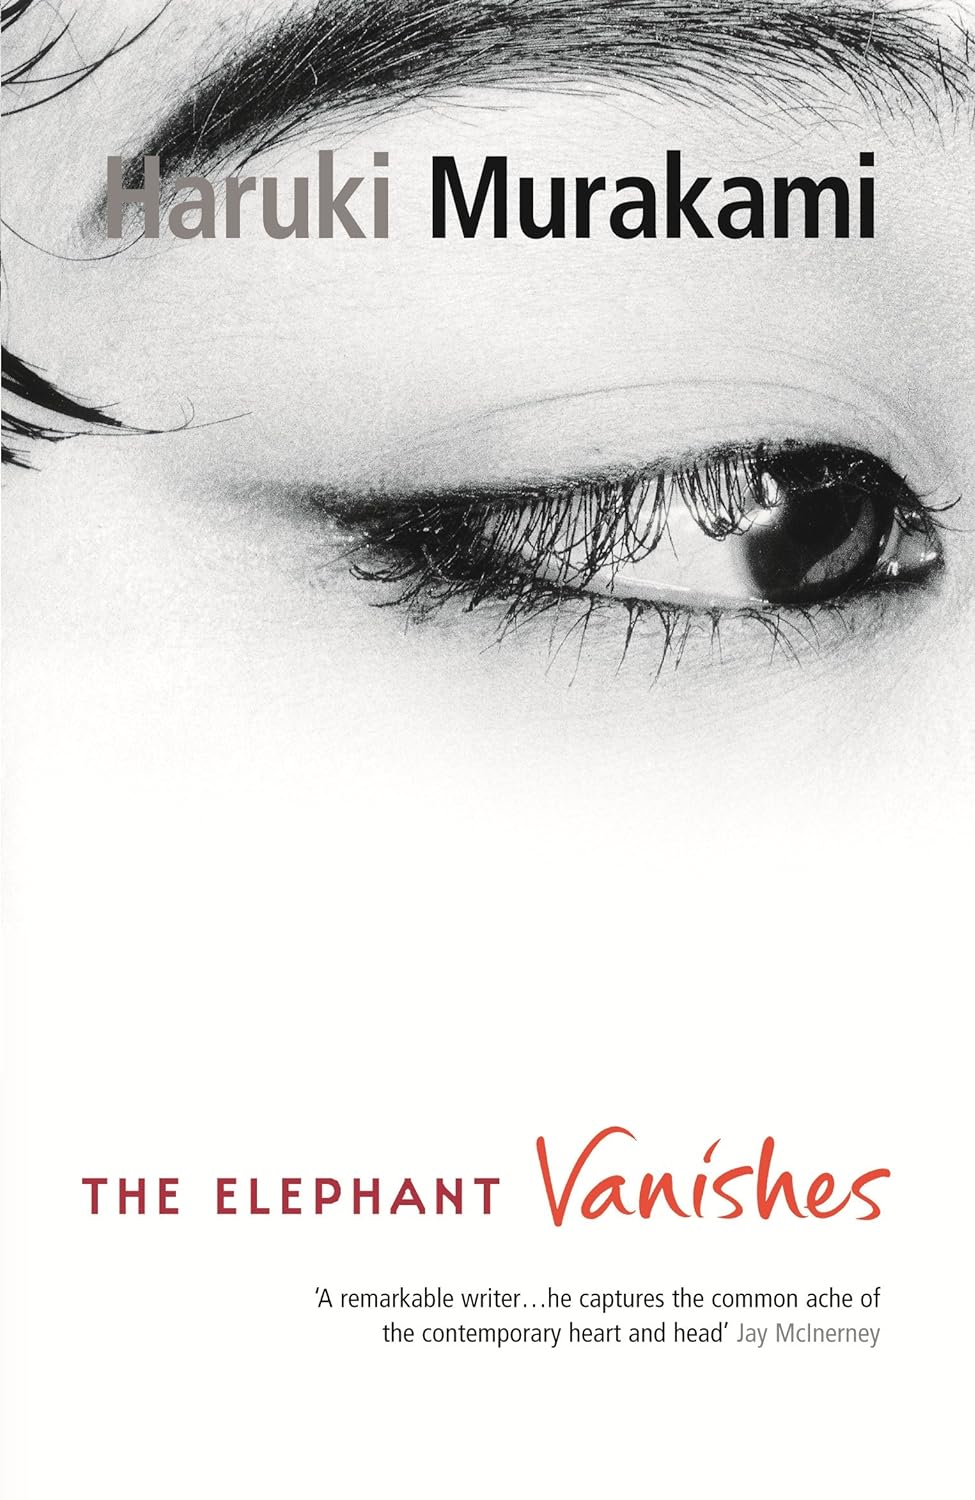 The Elephant Vanishes By Haruki Murakami